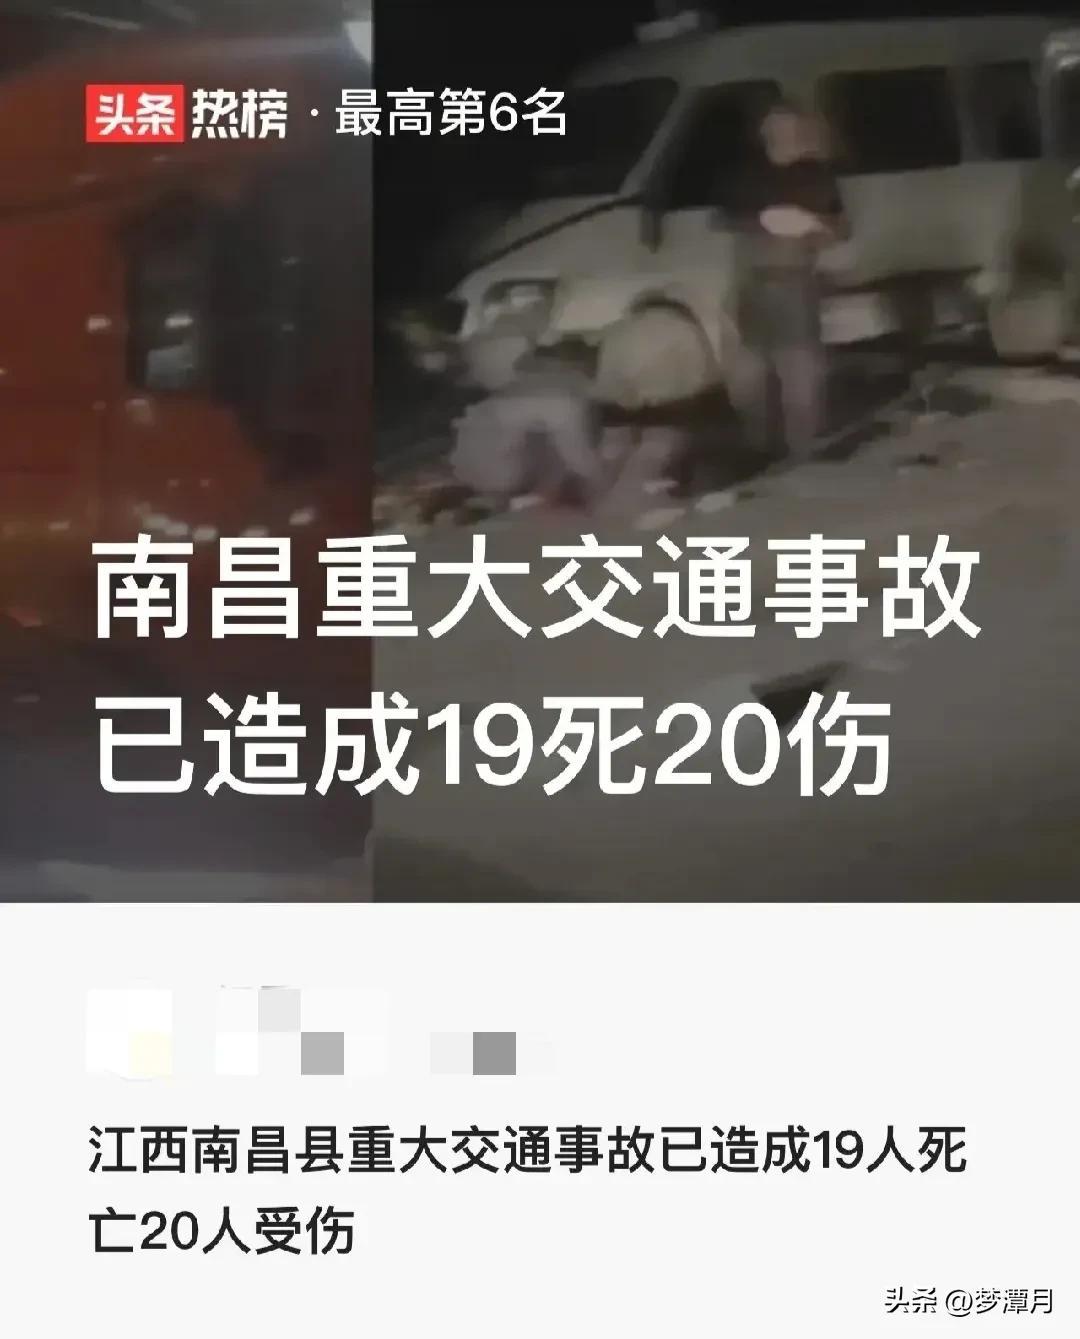 江西电厂倒塌致73死: 31人被采取刑事强制措施